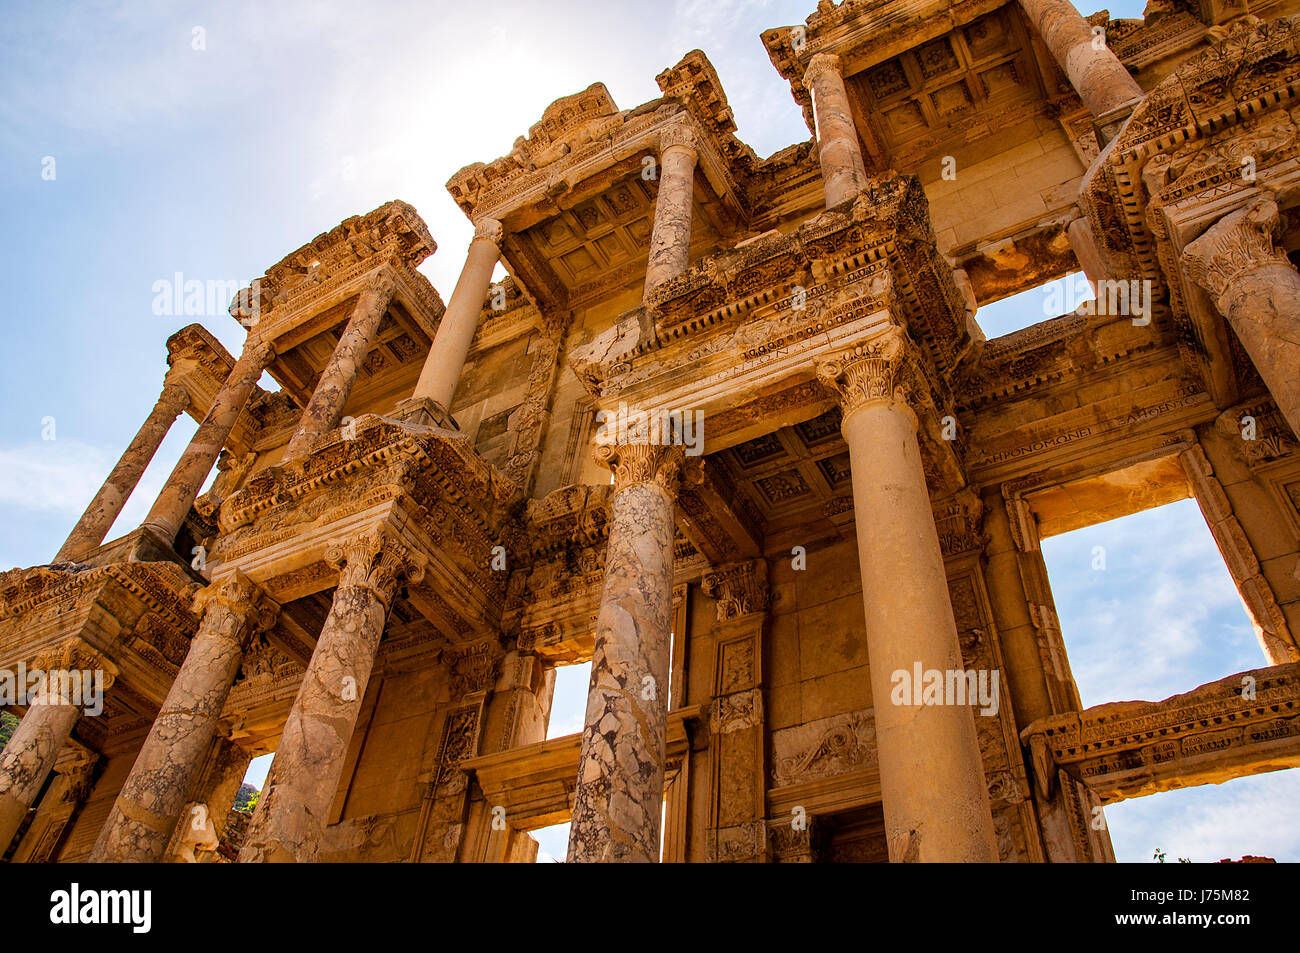 Photo de la bibliothèque de Celsus au lever du soleil dans les ruines romaines d'Éphèse, en Anatolie, Turquie. Banque D'Images